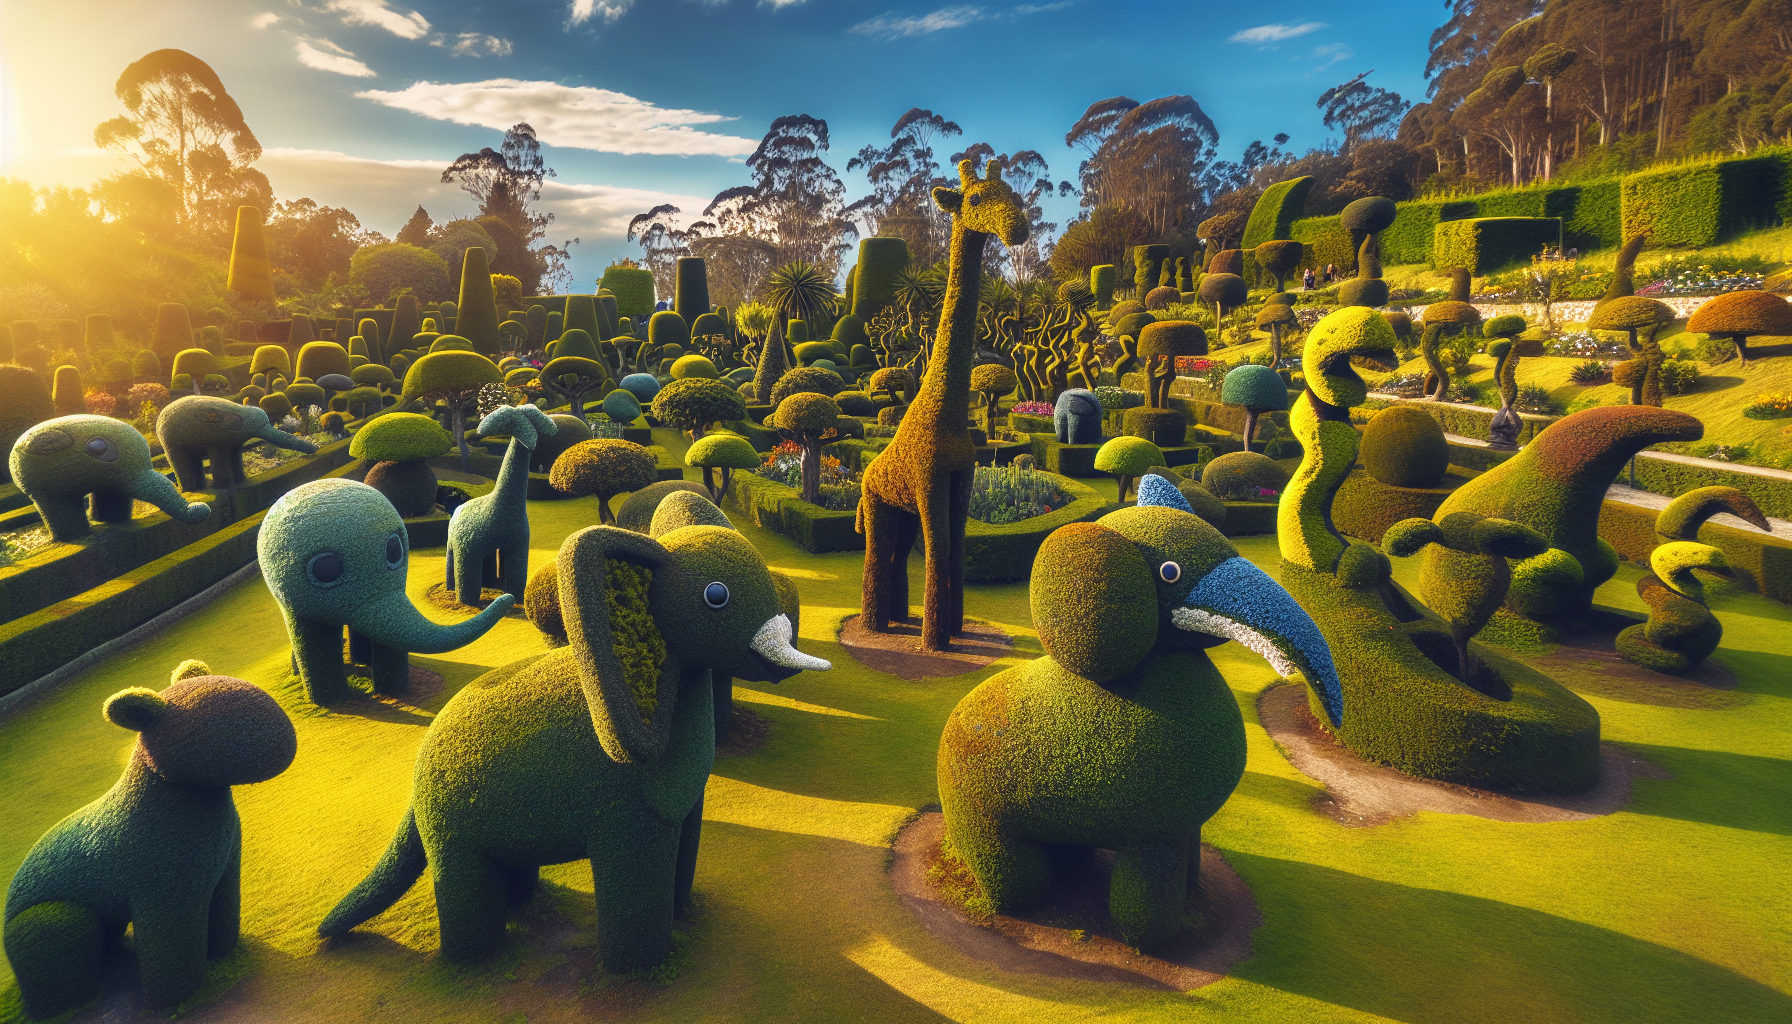 Whimsical animal topiary in Zarcero's gardens